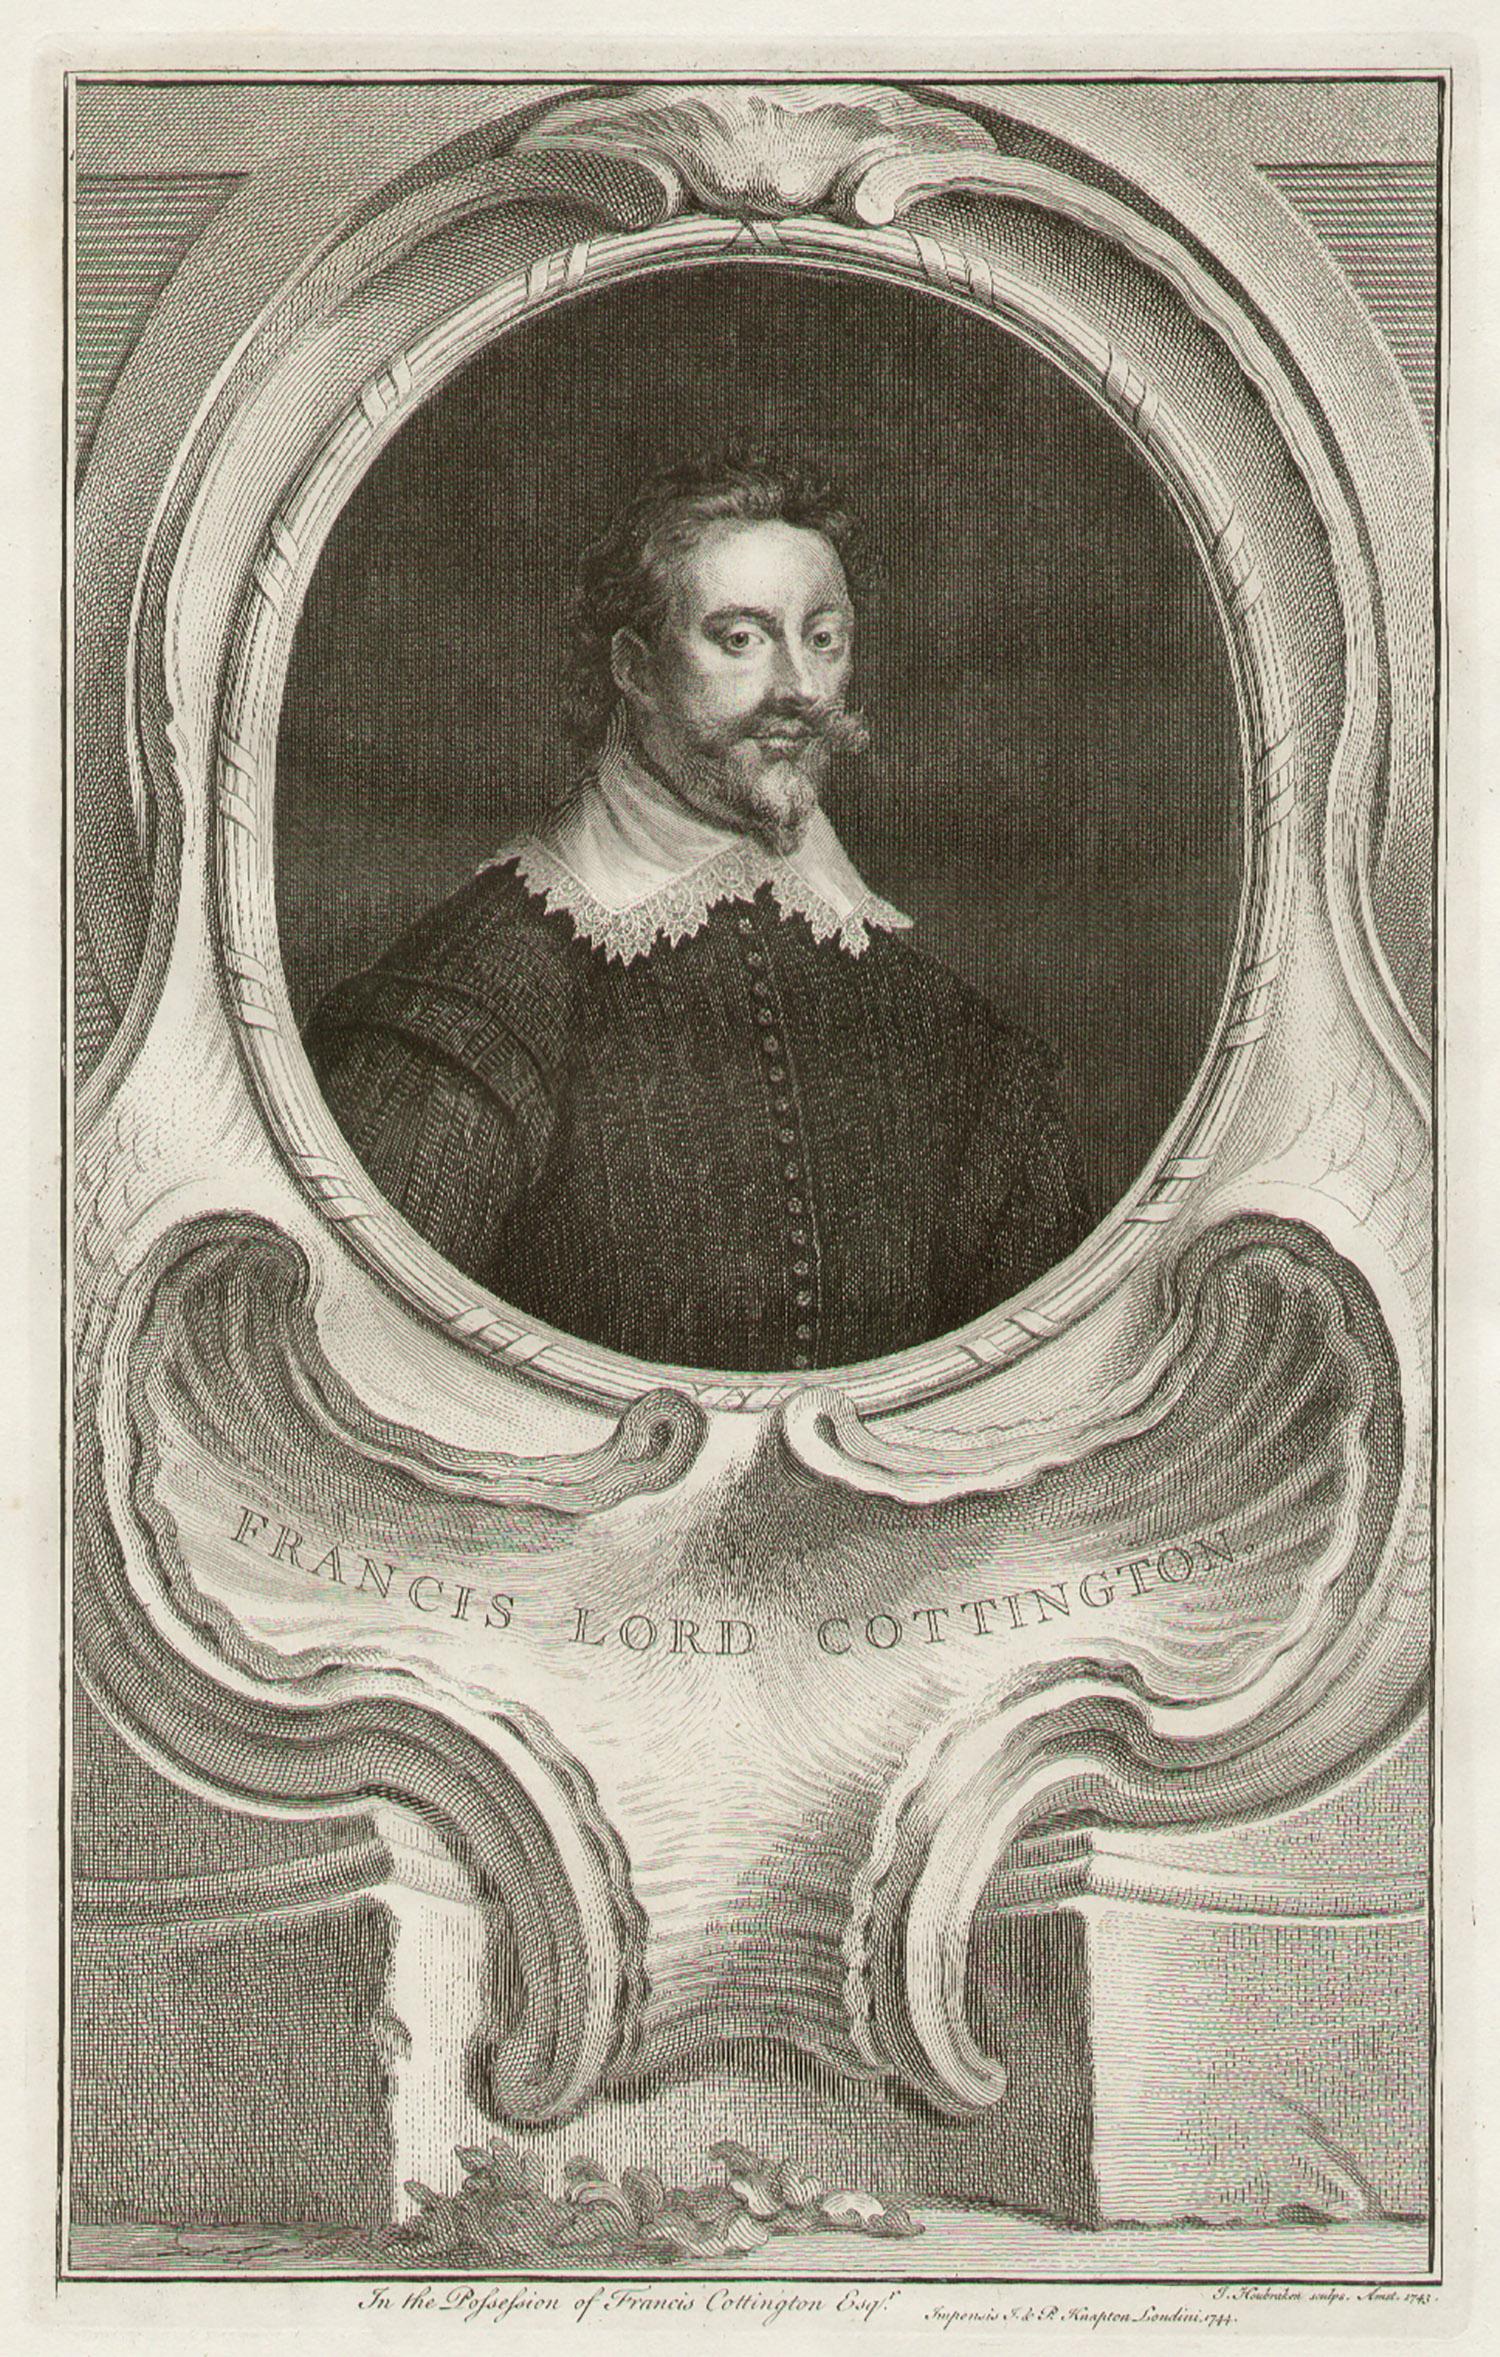 Francis Lord Cottington, portrait engraving print, c1820